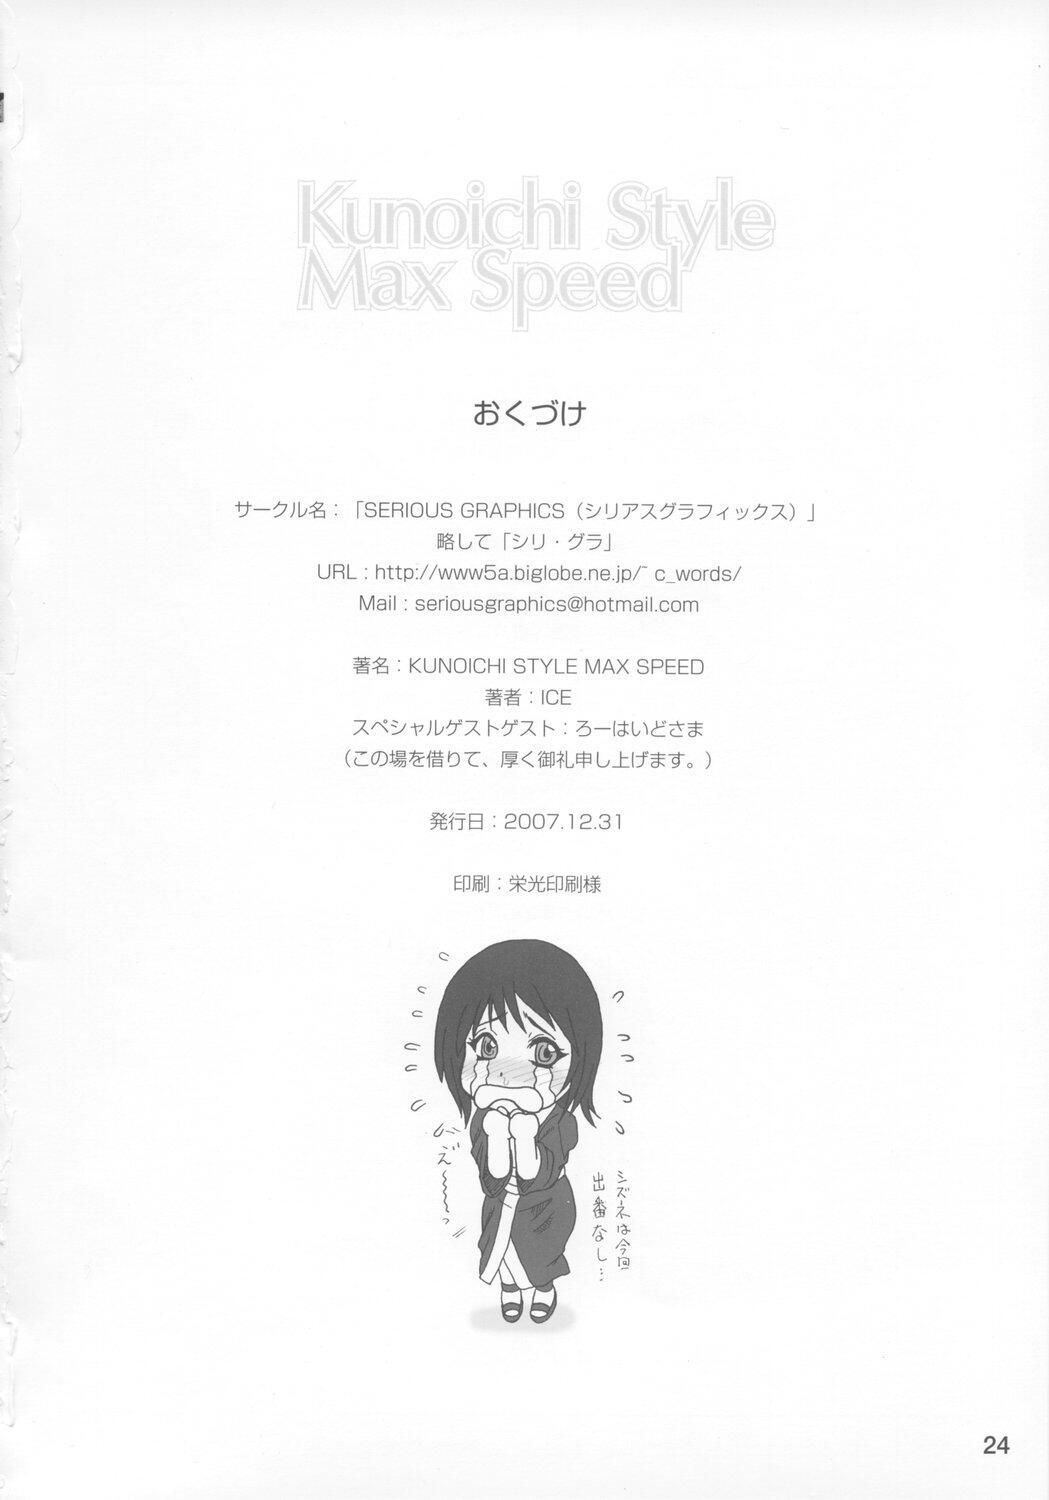 Kunoichi Style Max Speed naruto 24 hentai manga